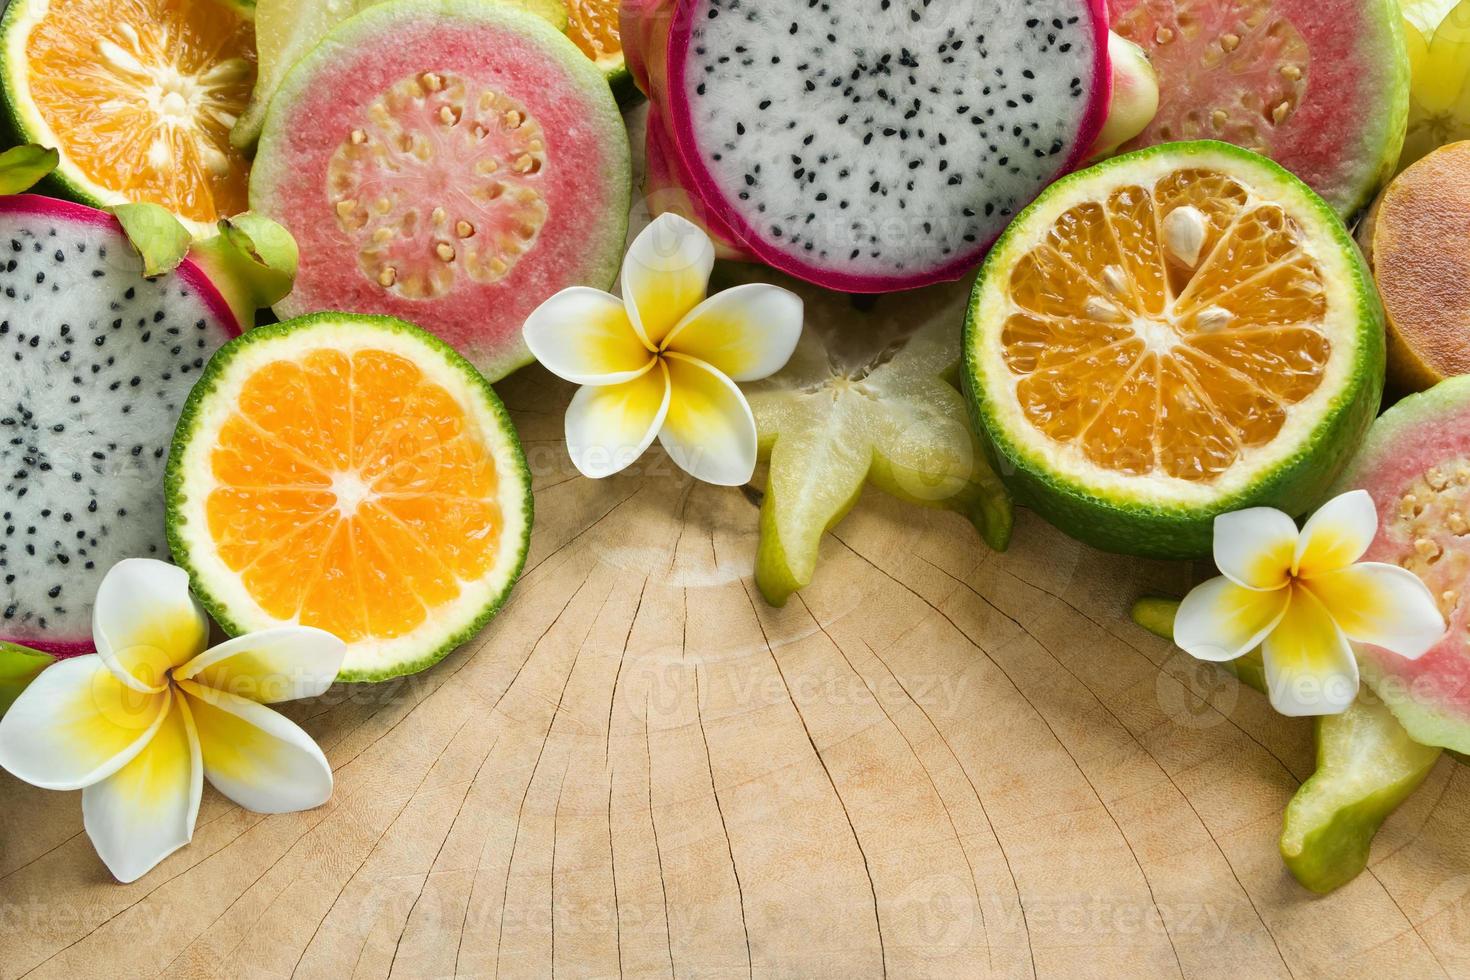 ljus färgrik tropisk frukt - mandarin, guava, drake frukt, stjärna frukt, sapodilla med blommor av plumeria på de trä- bakgrund. foto